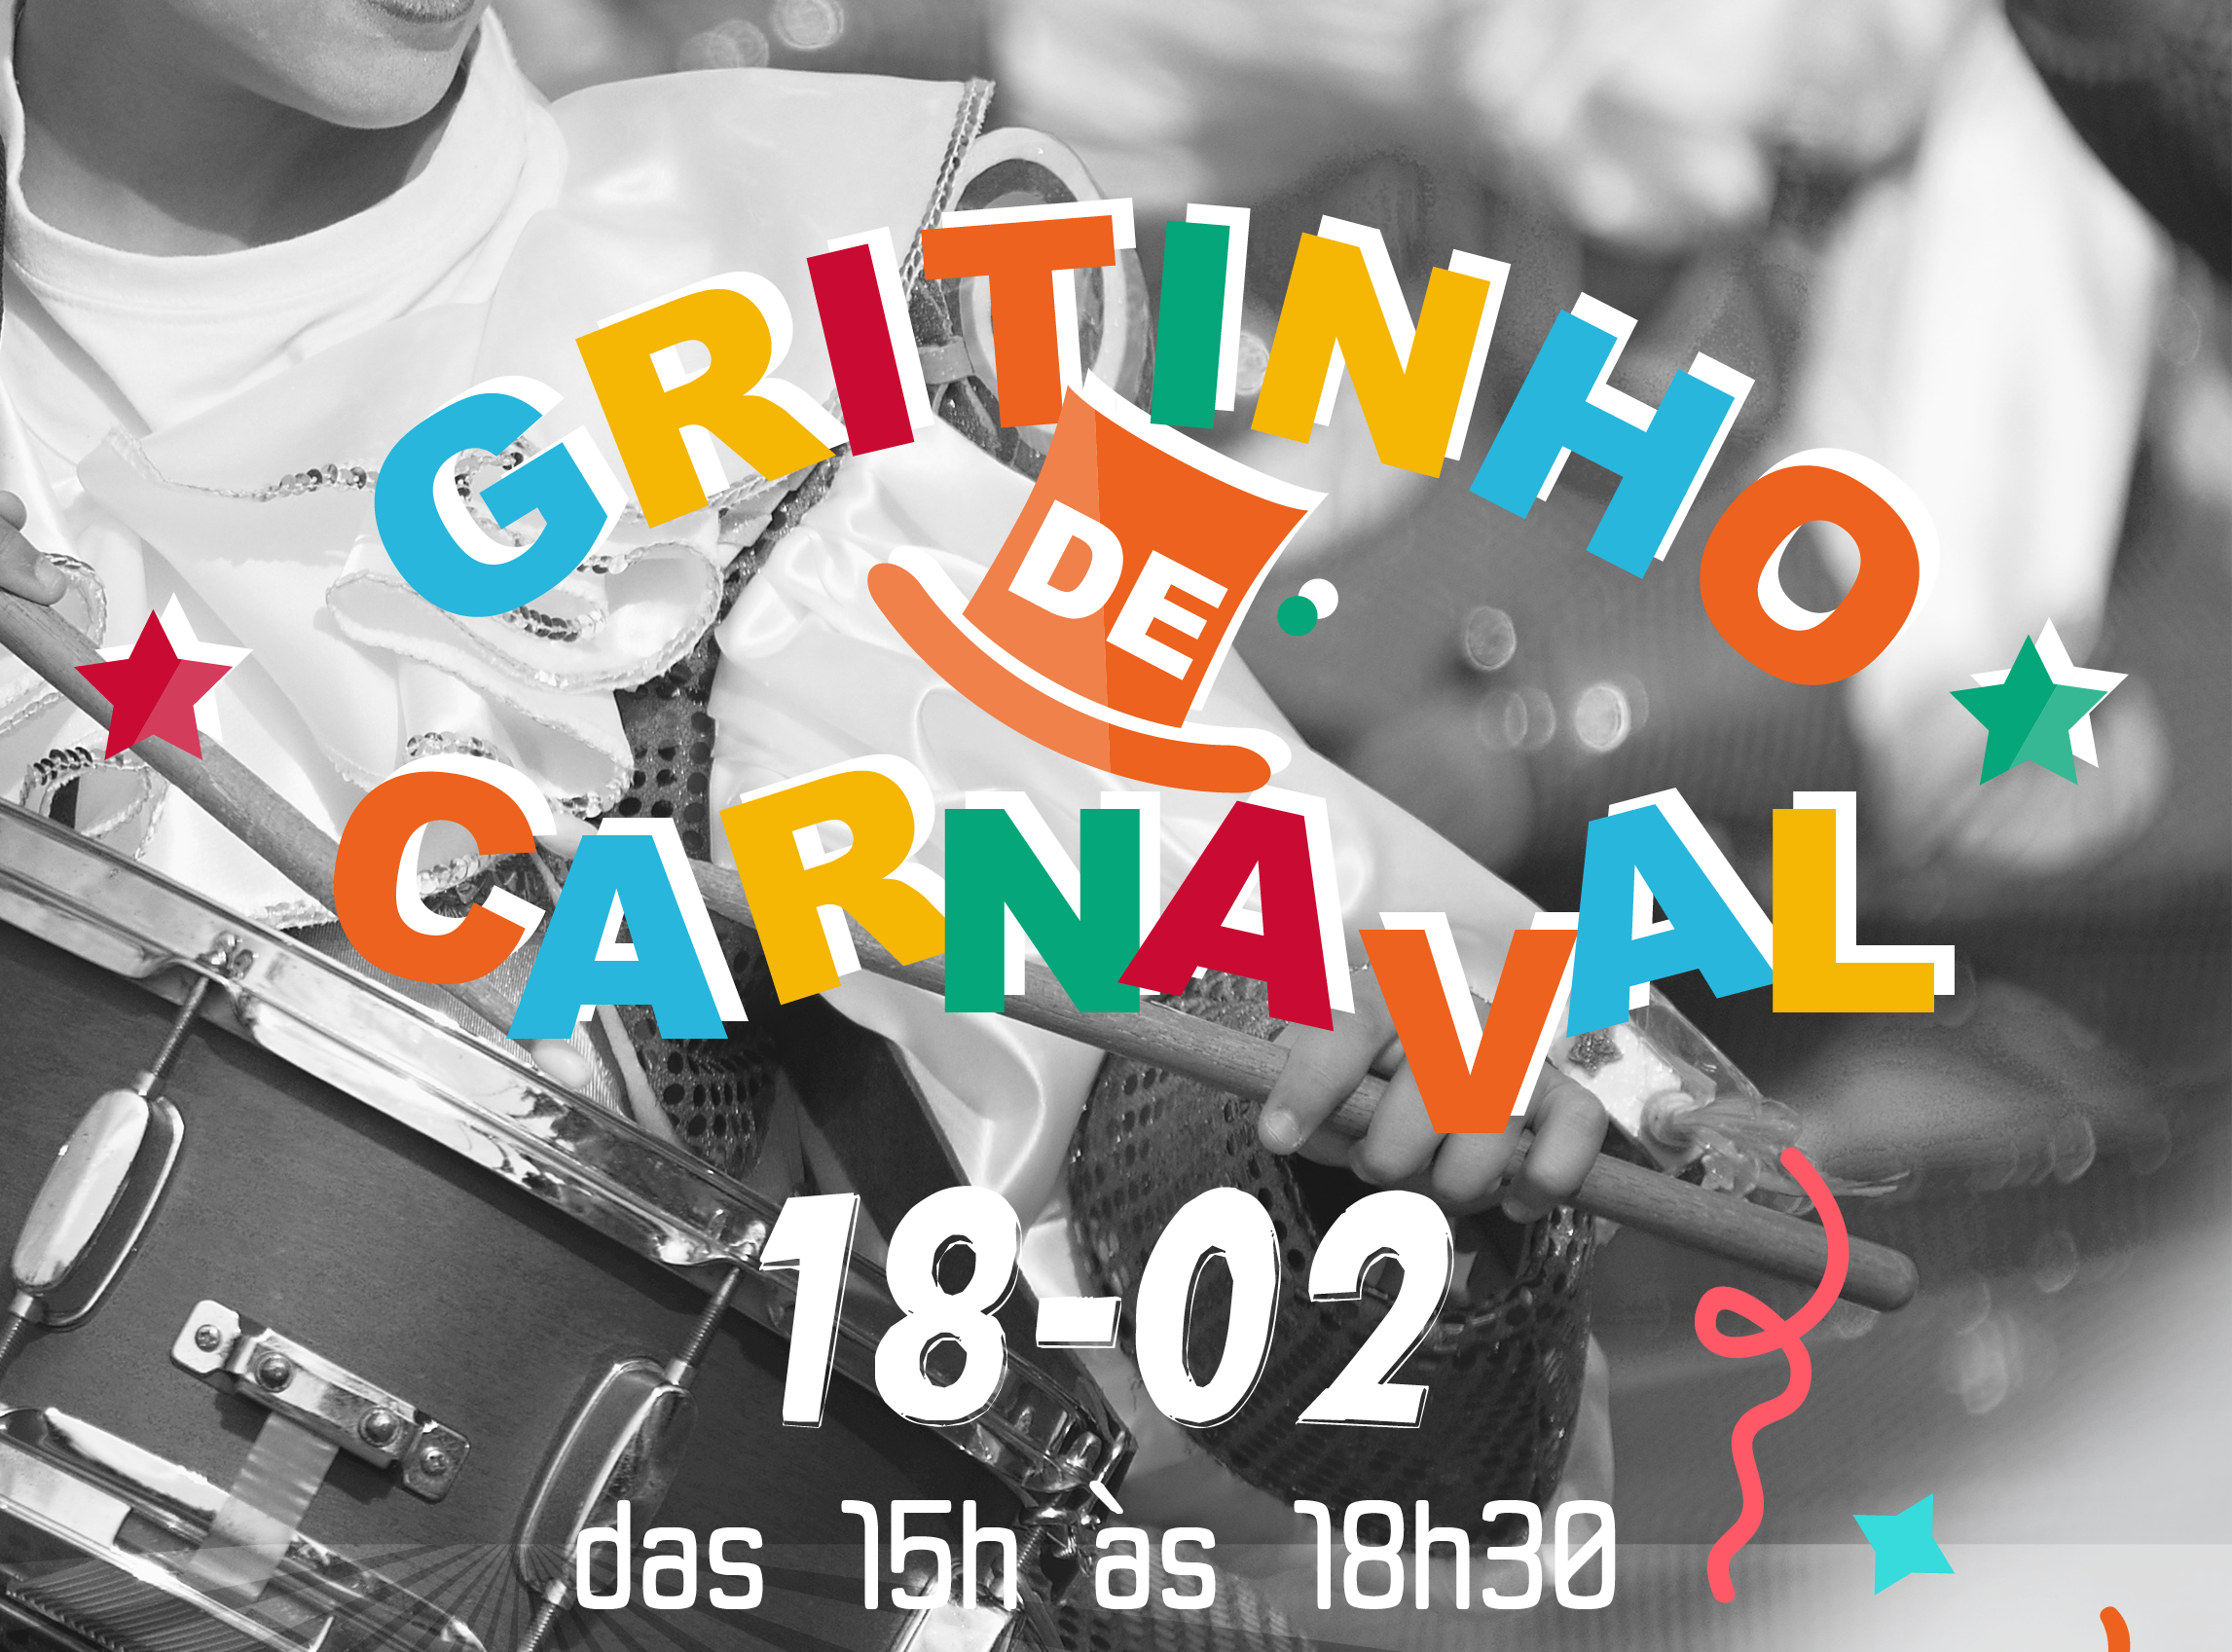 Bistrozinho apresenta Gritinho de Carnaval